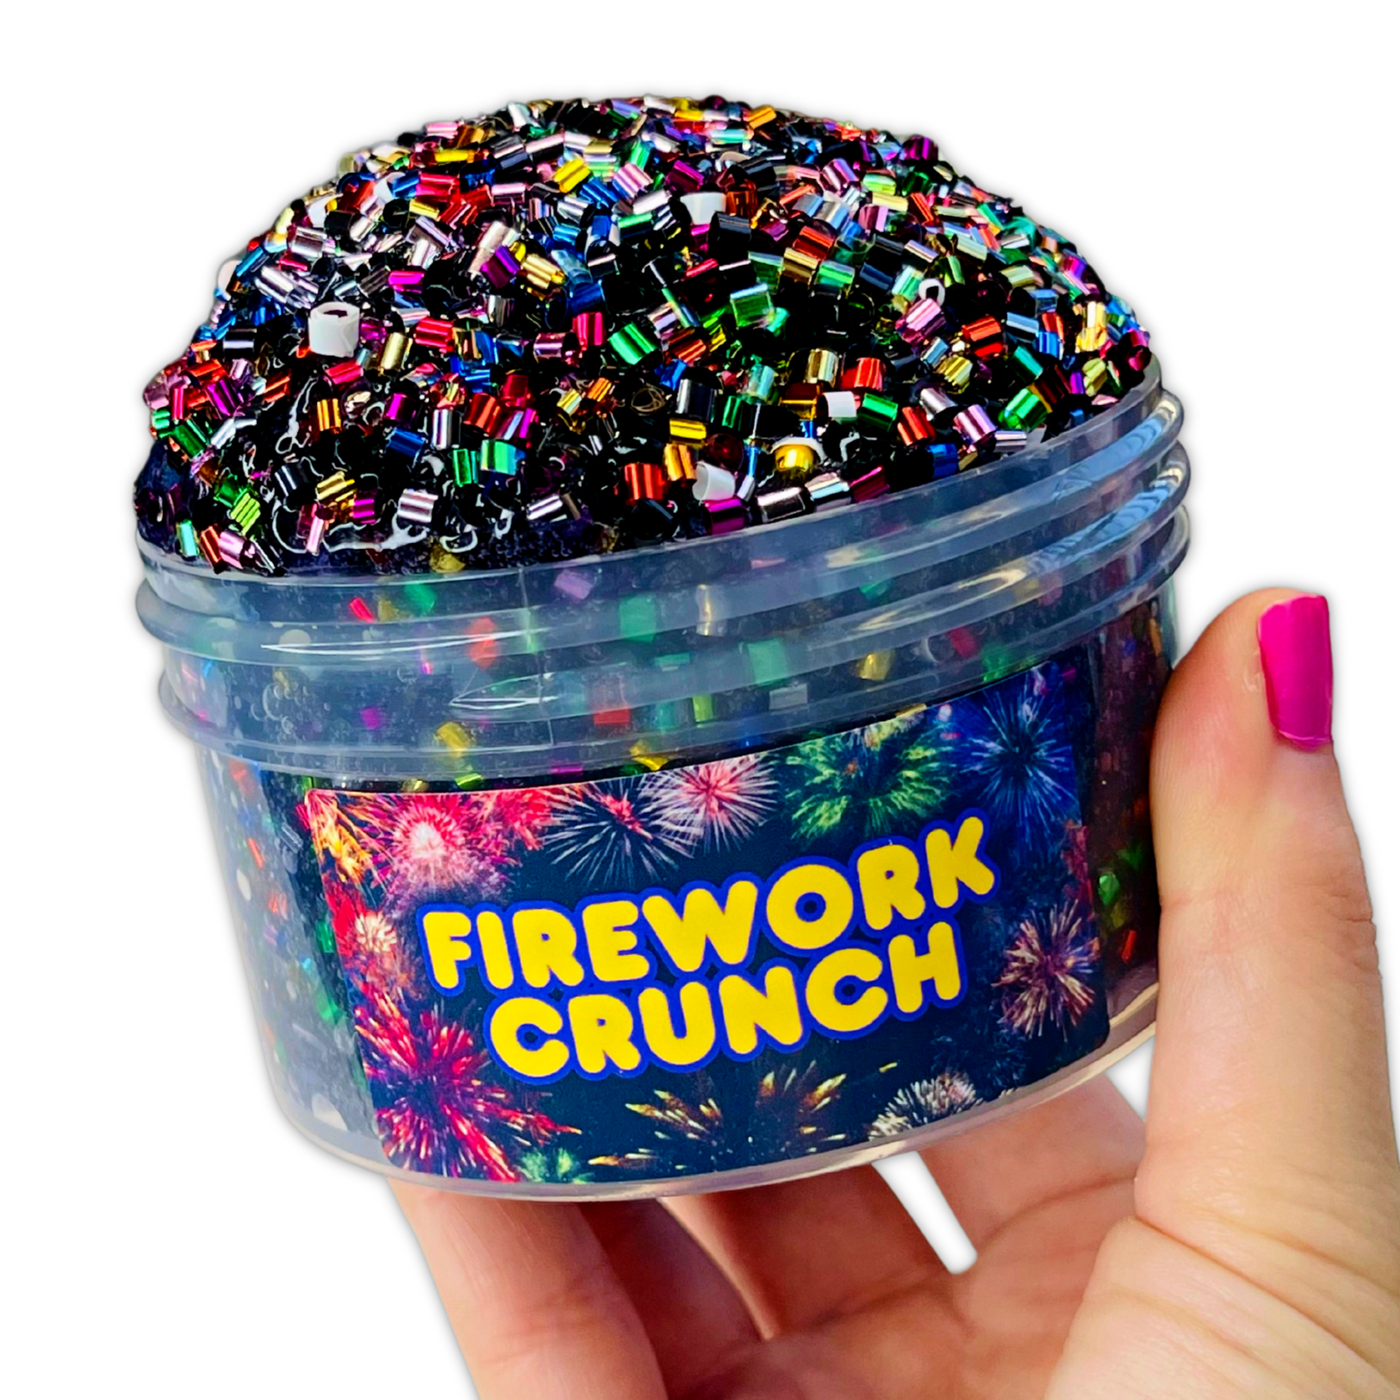 Firework Crunch Crunchy Bingsu Slime